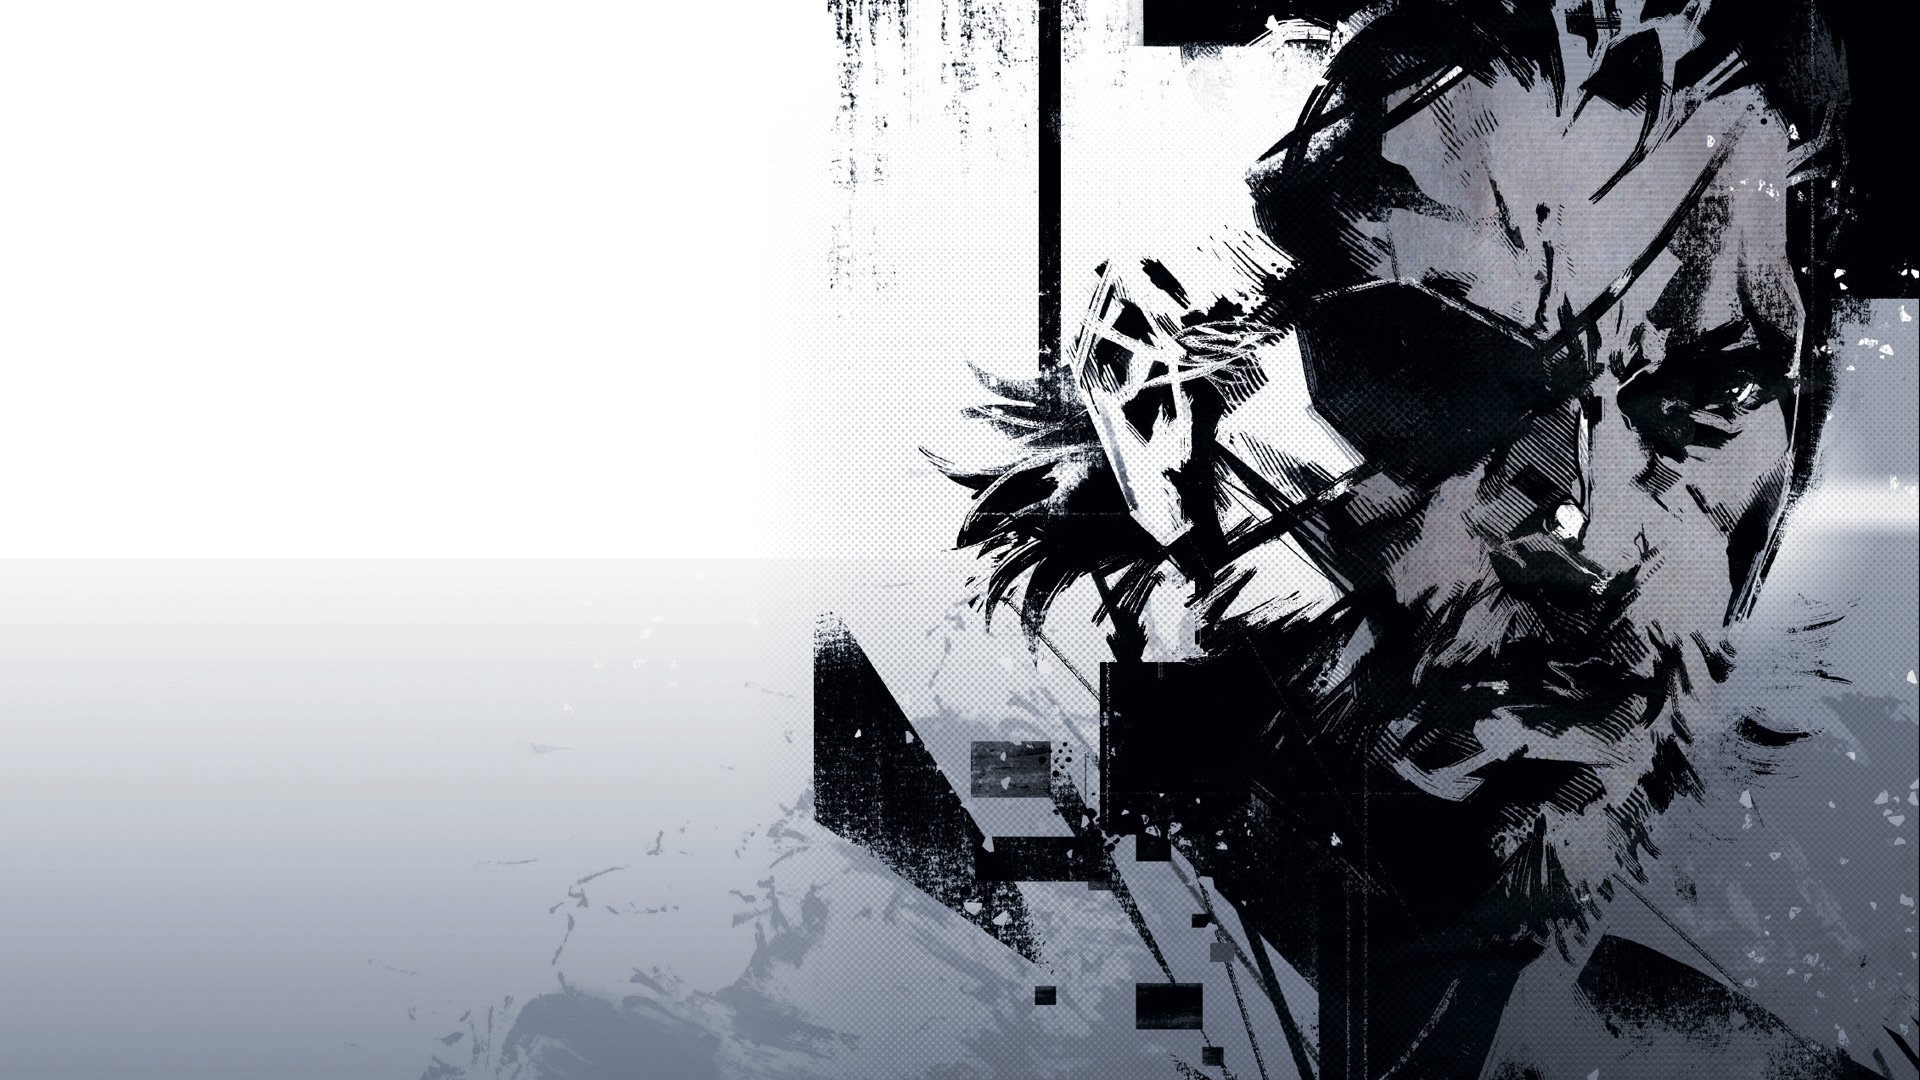 Art of Metal Gear Solid 5 Wallpaper [DESKTOP]